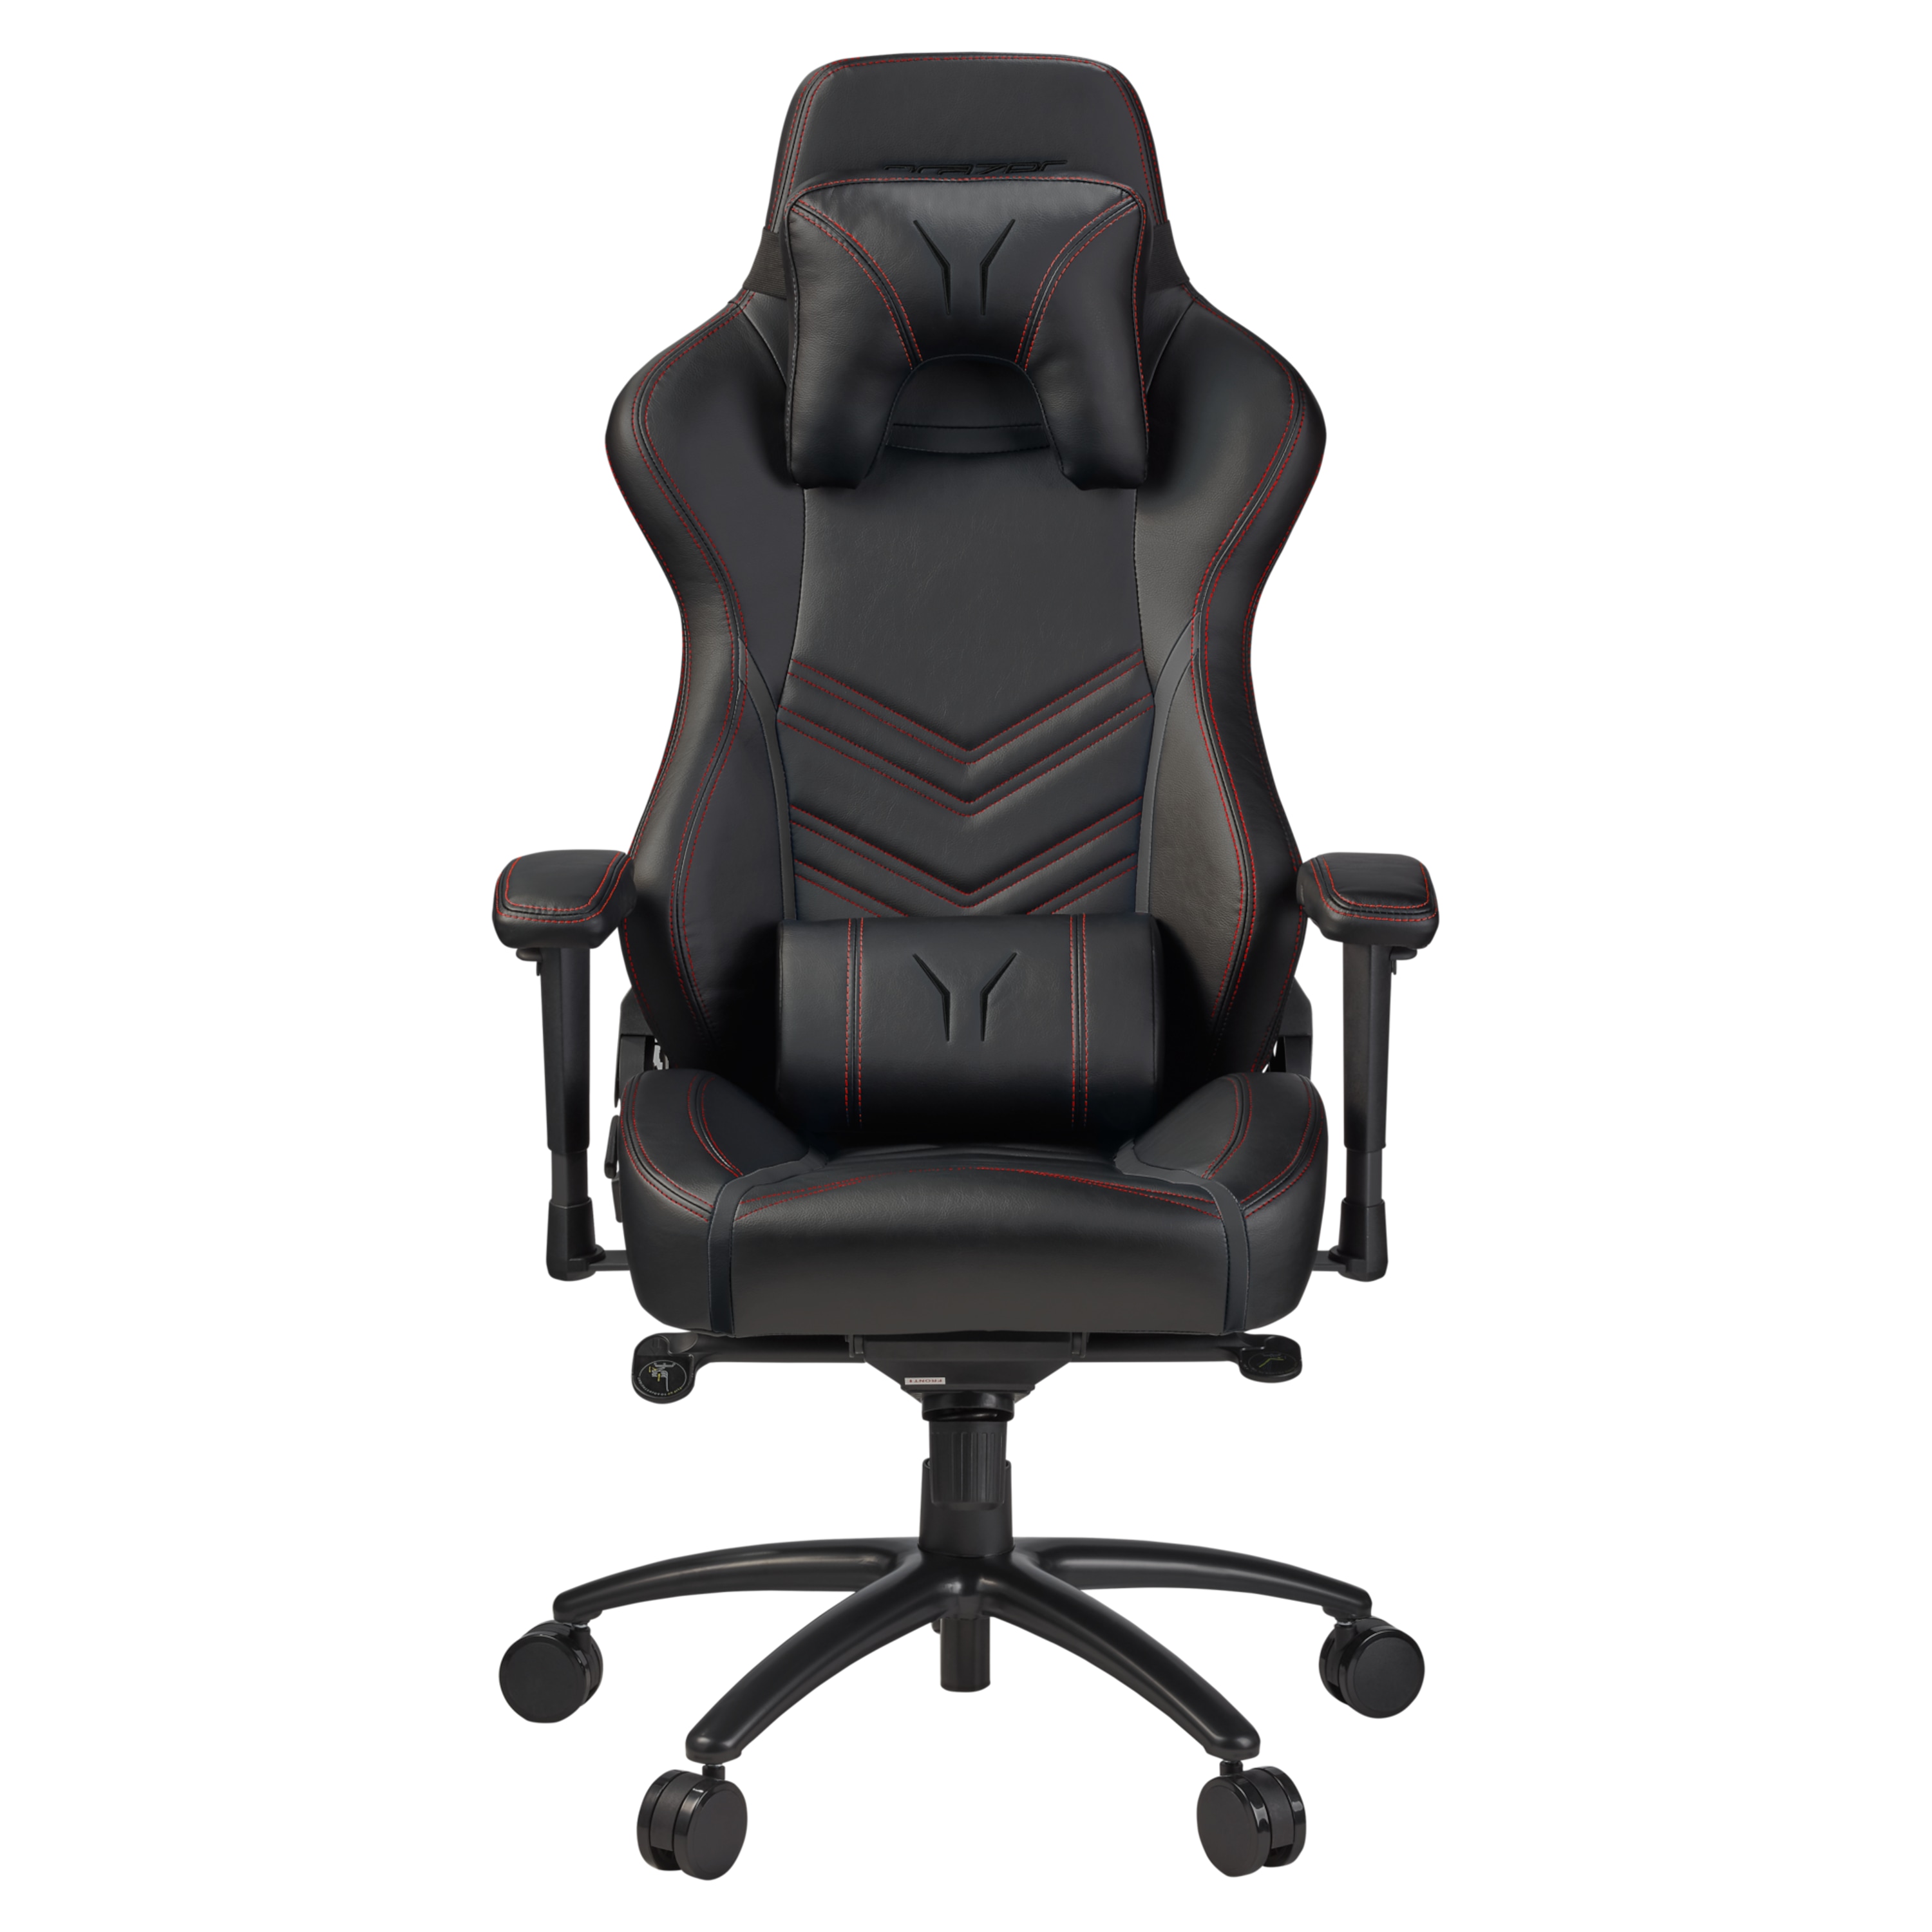 und in  günstig Kaufen-MEDION ERAZER® X89410 Gaming Stuhl, stilvoll und komfortabel, sportliche Optik und hochwertige Materialien, mit 2 Kissen für den Rücken- und Kopfbereich. MEDION ERAZER® X89410 Gaming Stuhl, stilvoll und komfortabel, sportliche Optik un